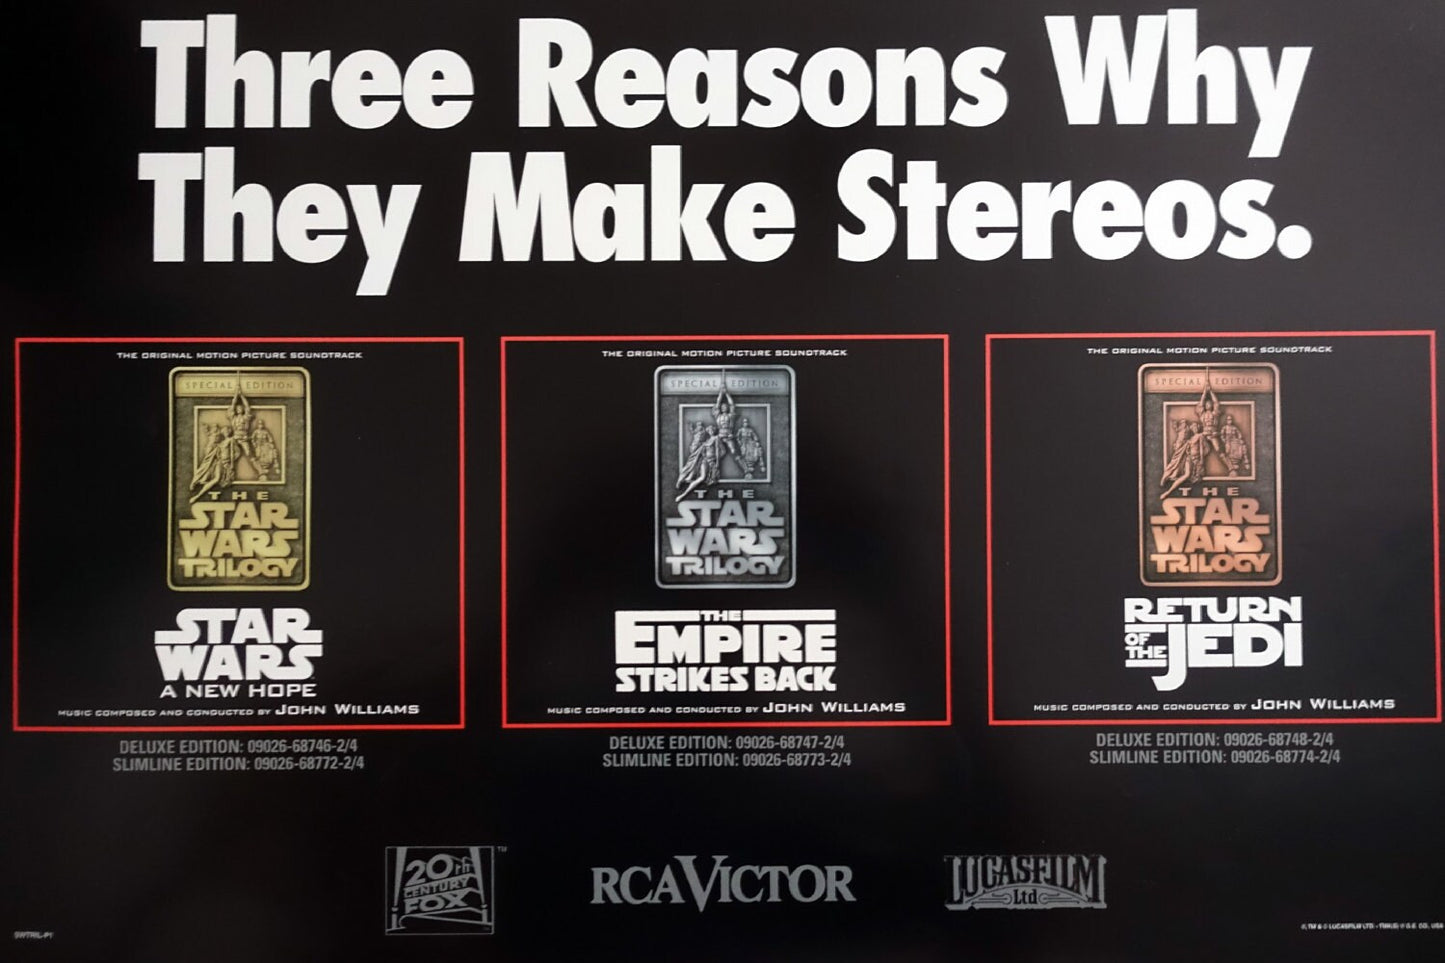 1997 Star Wars Trilogy Music Poster - Original Vintage Poster